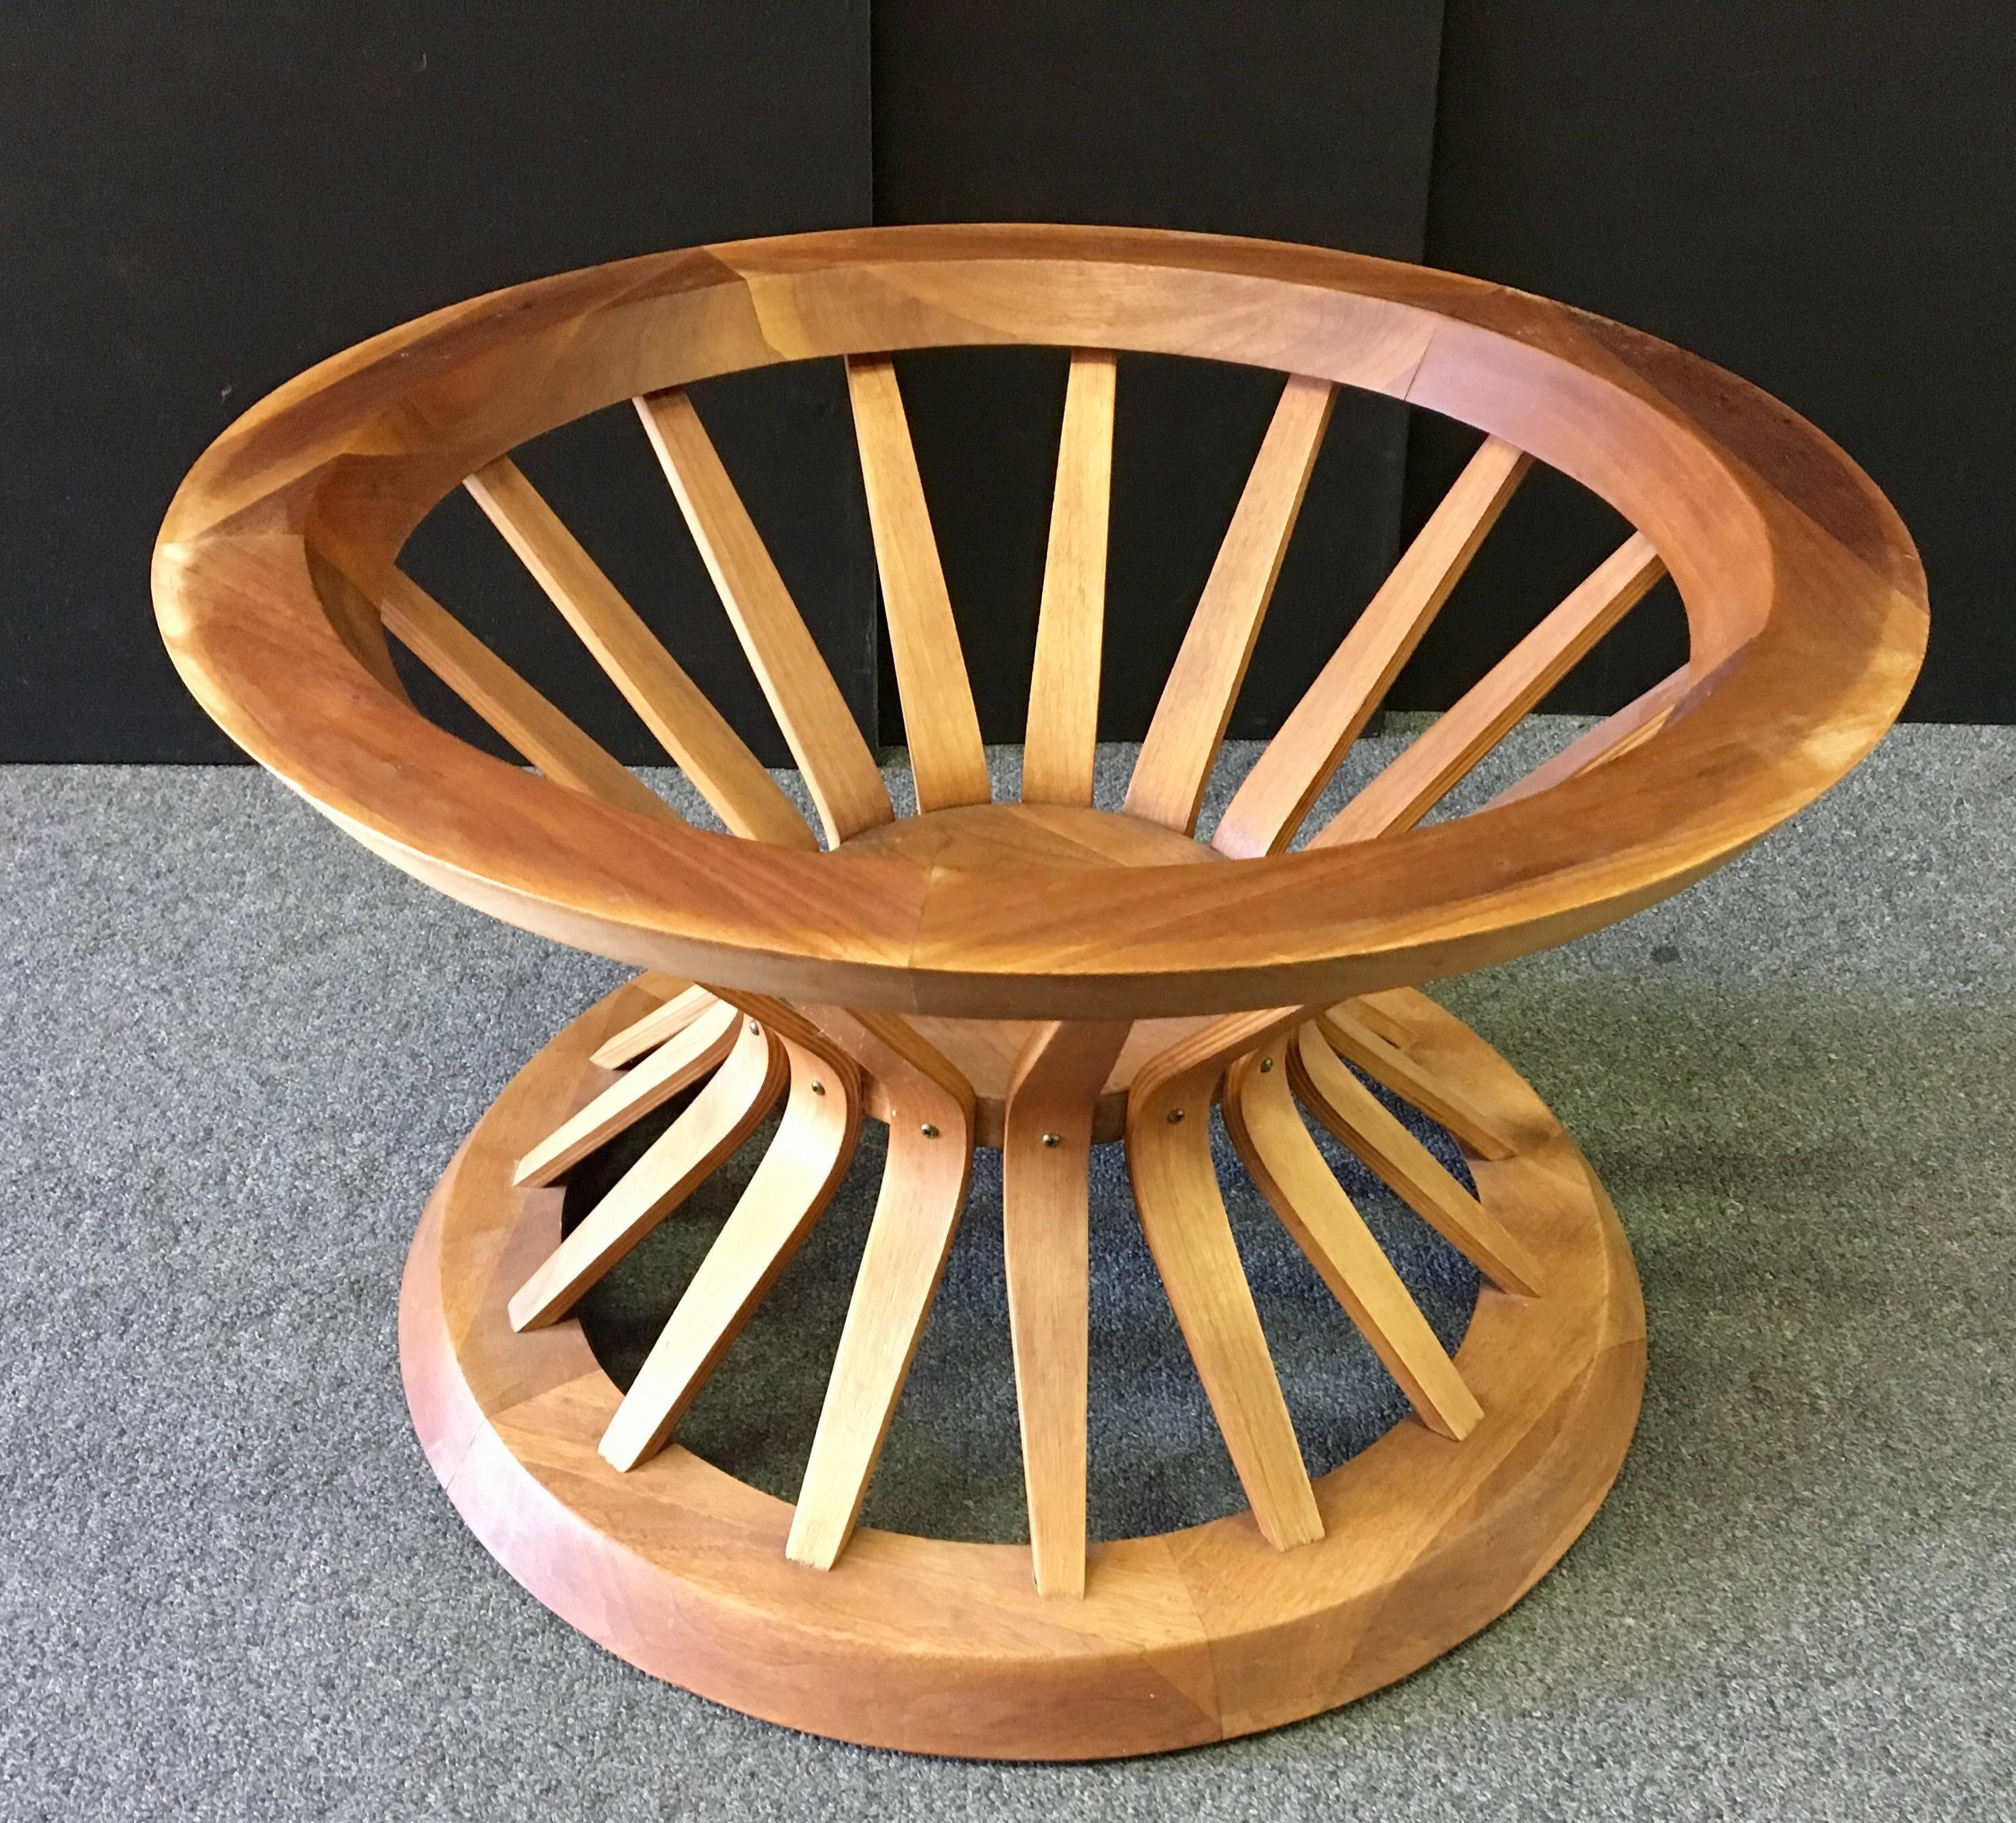 American Mid-Century Round Wheatshaft Coffee Table Designed by Edward Wormley for Dunbar